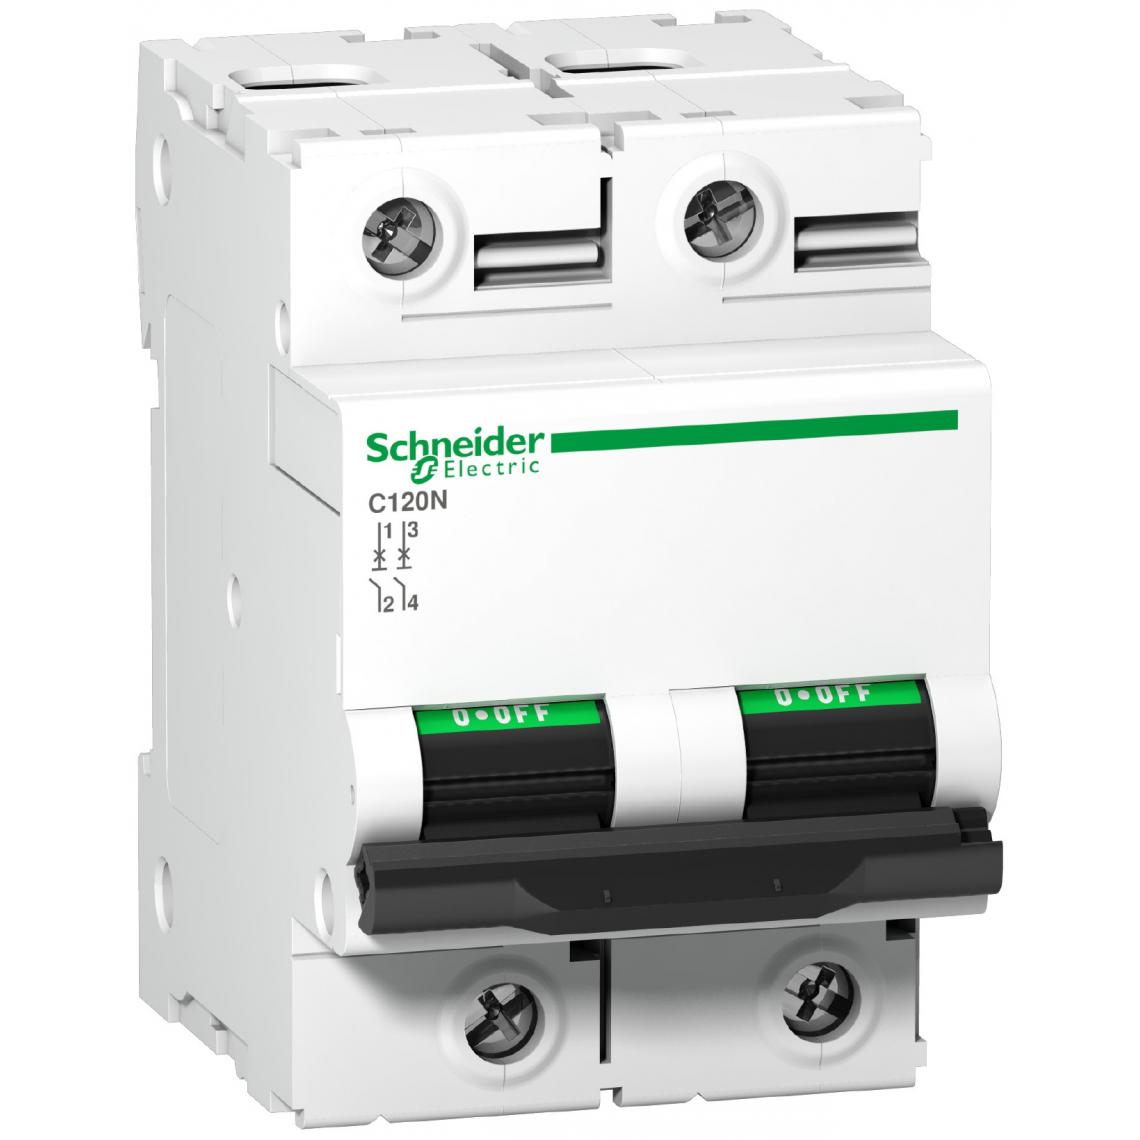 Schneider Electric - disjoncteur schneider - c120n - 2 pôles - 80 ampères - courbe c - schneider electric a9n18361 - Coupe-circuits et disjoncteurs